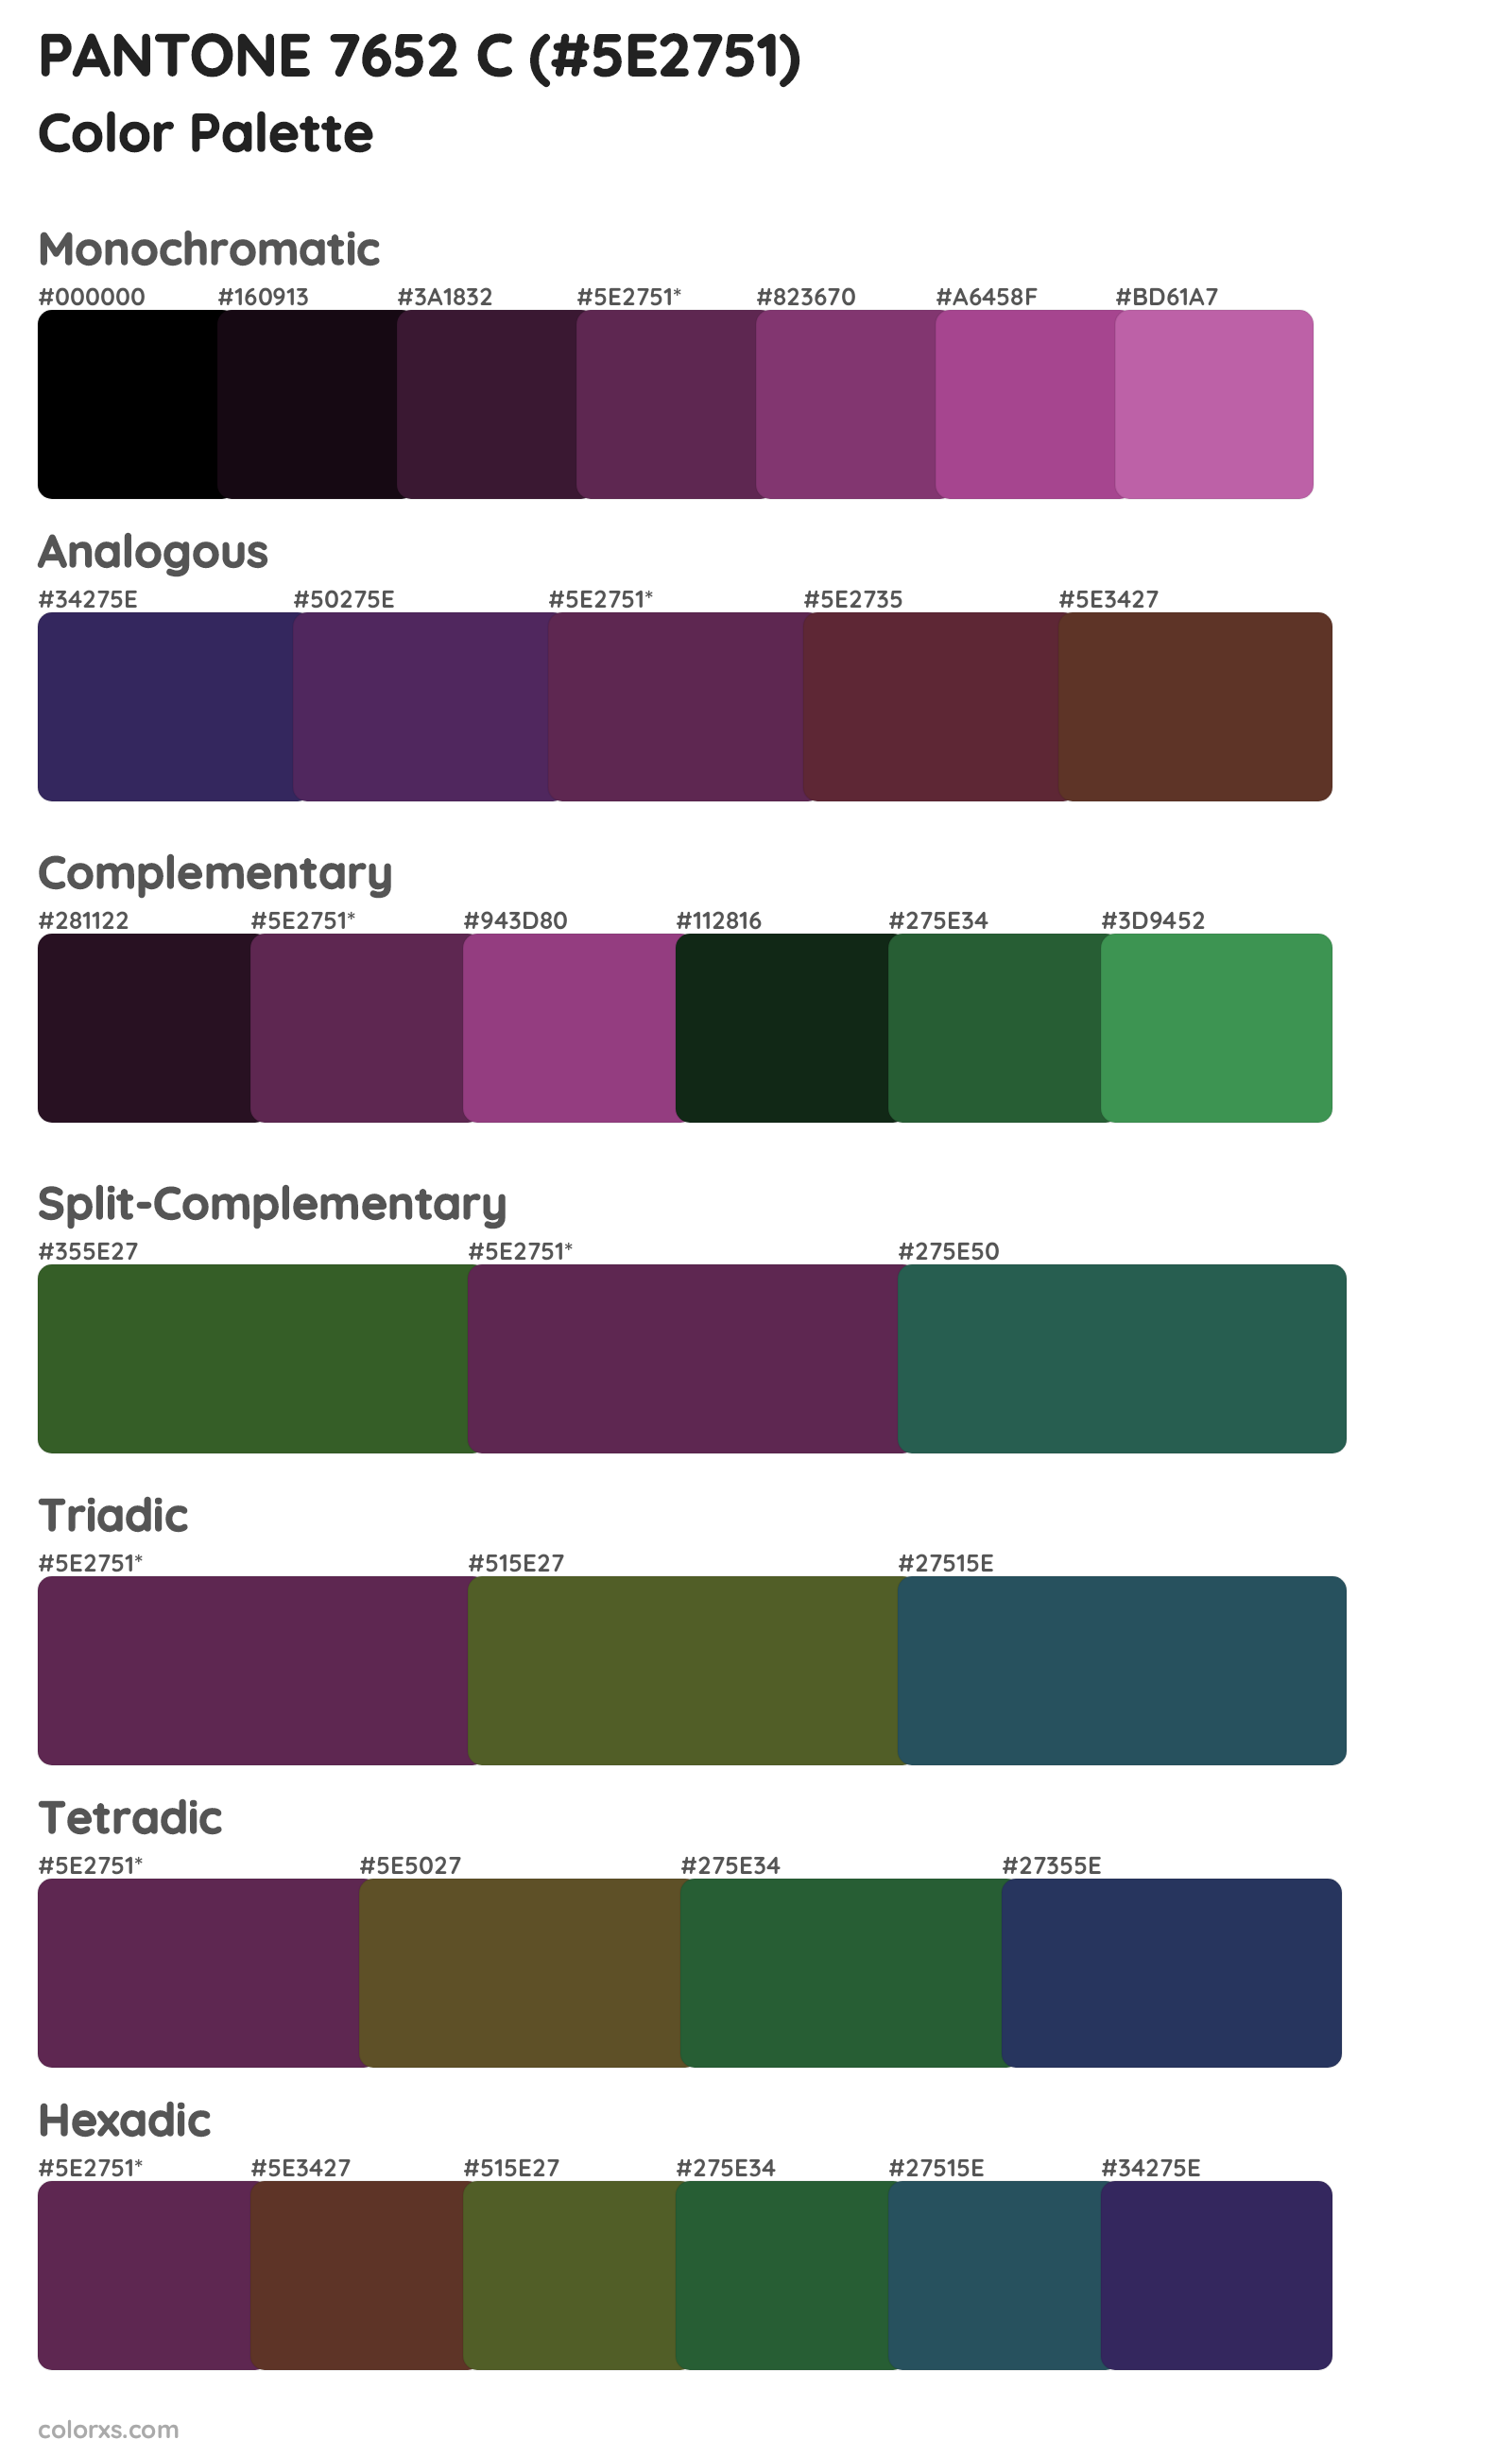 PANTONE 7652 C Color Scheme Palettes